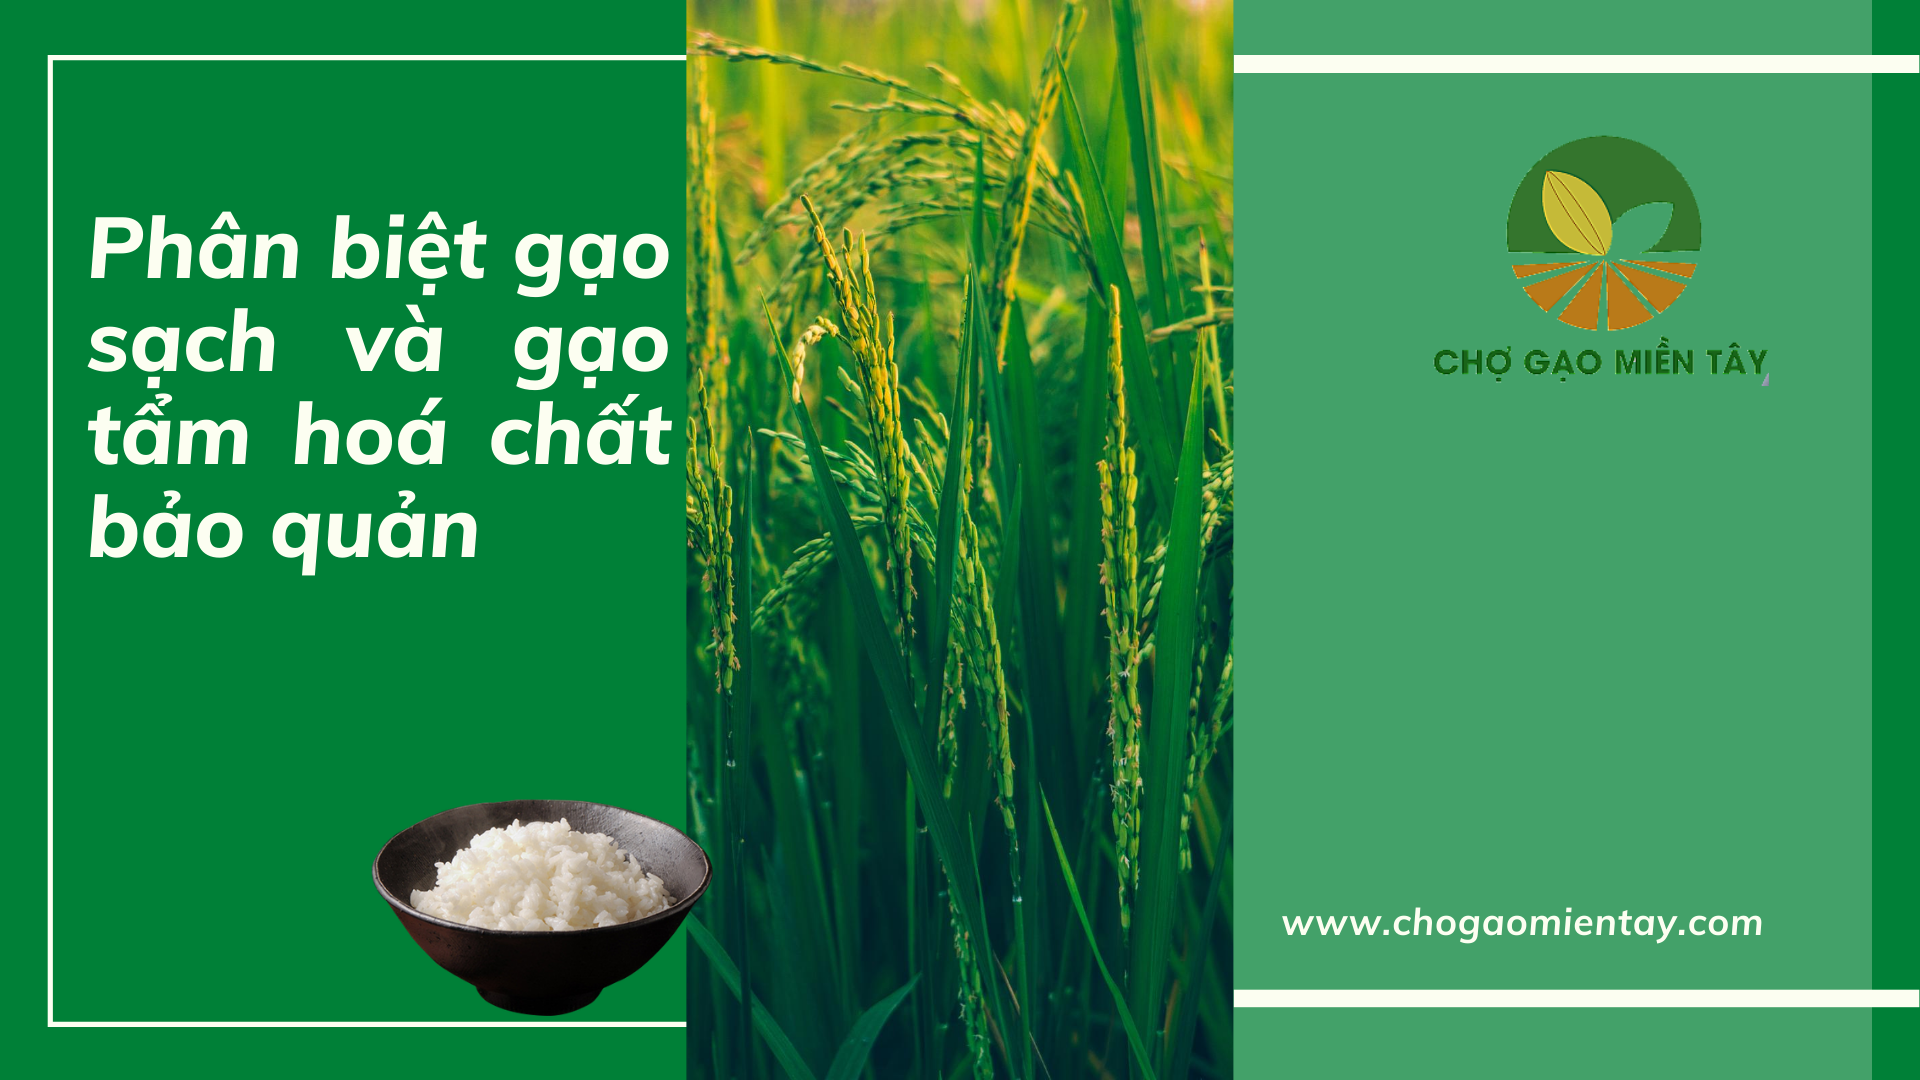 phân biệt gạo sạch và gạo chứa chất bảo quản